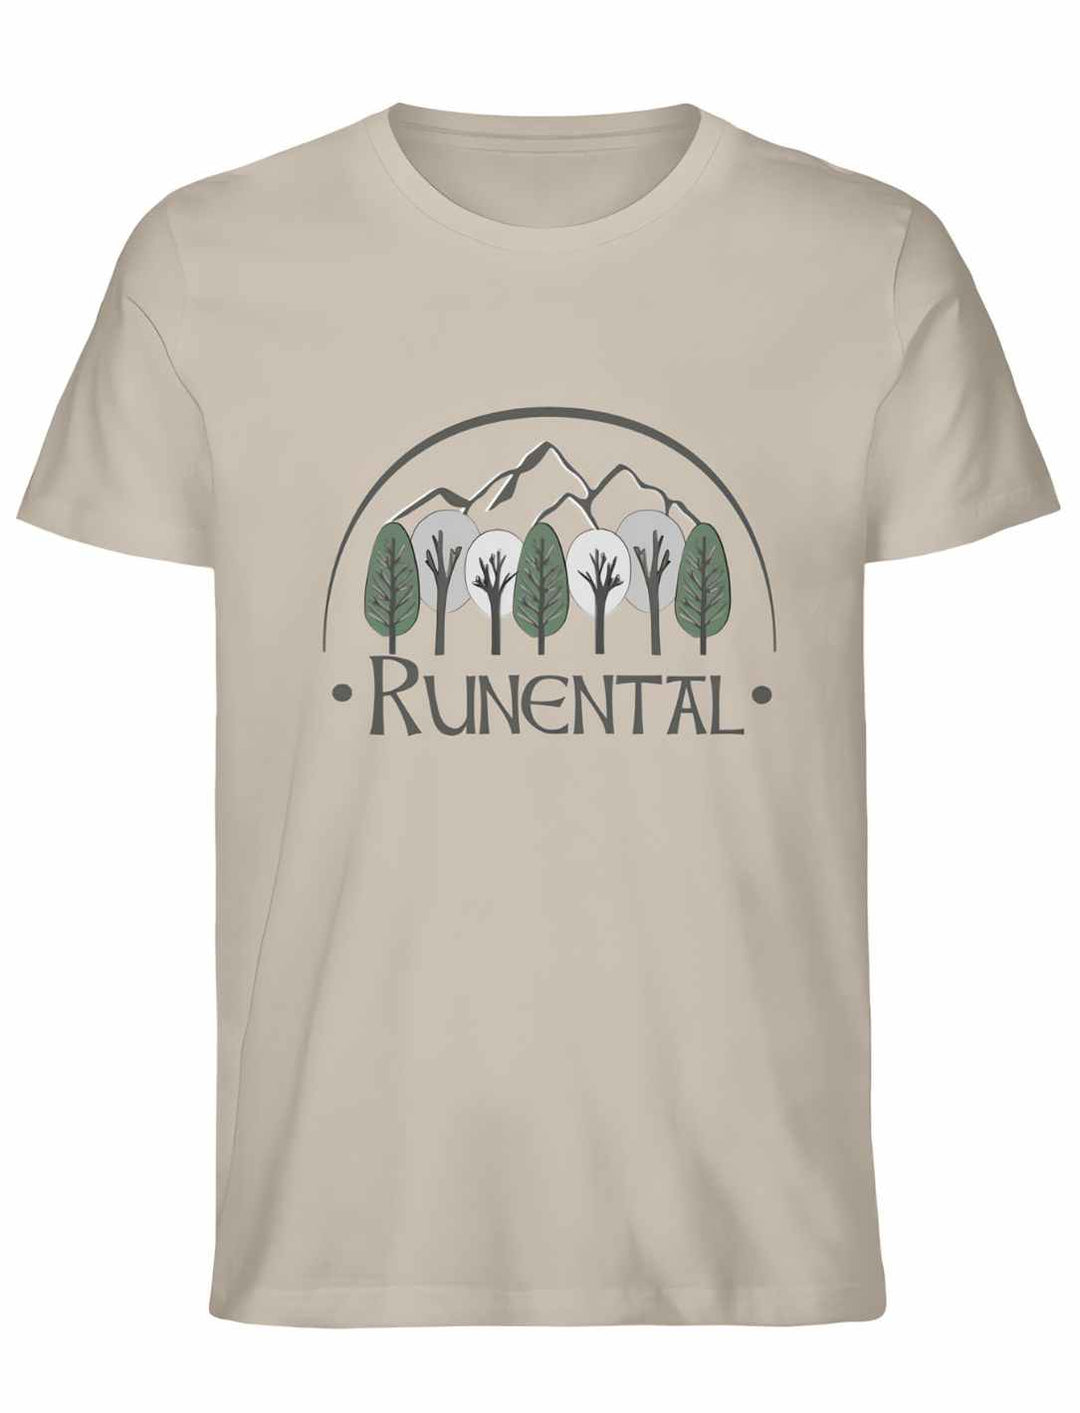 Desert Dust Runental Fanwear Unisex Organic T-Shirt, flach gelegt.